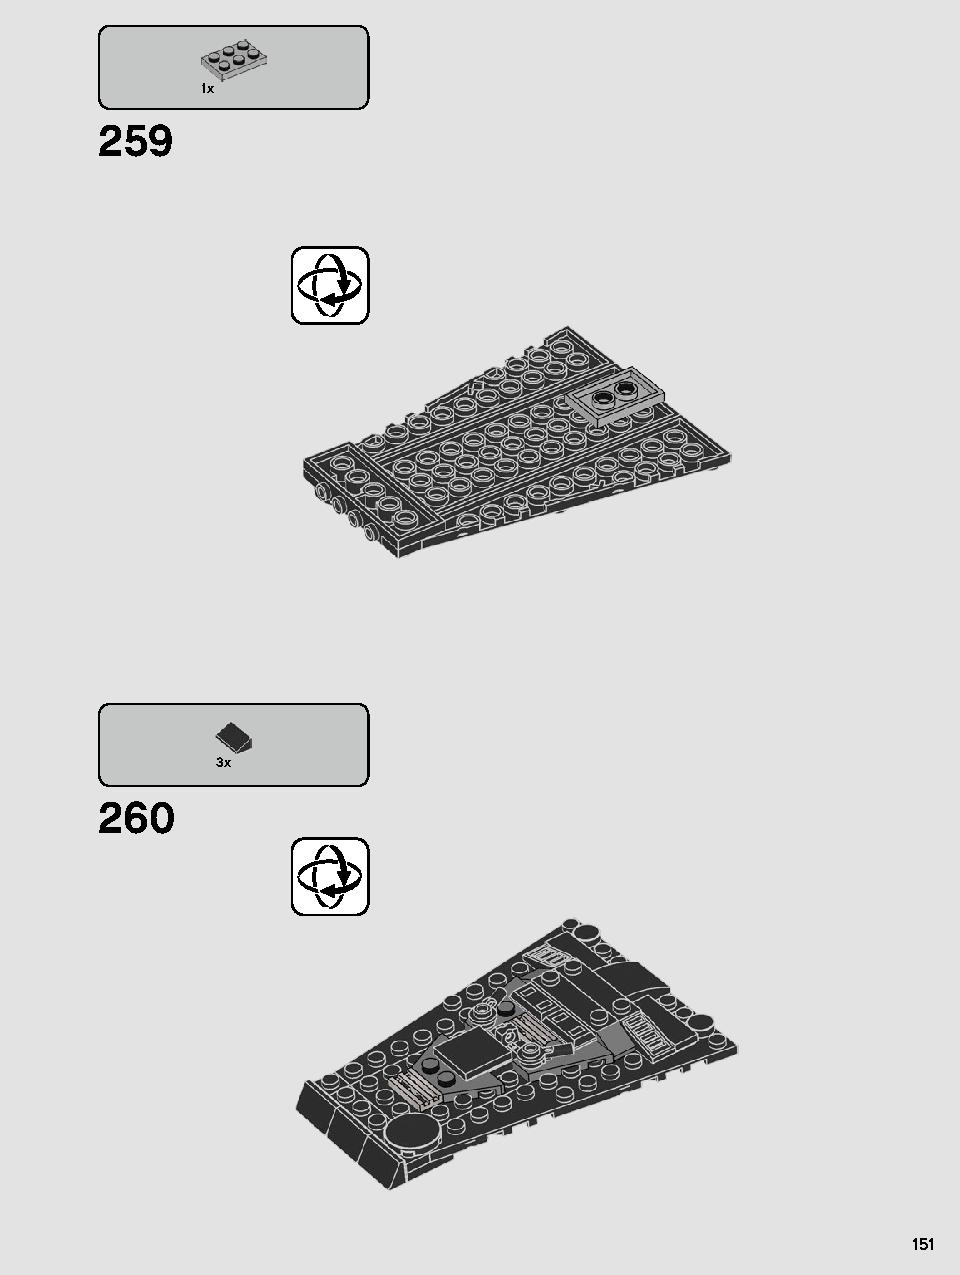 스타워즈 카일로 렌의 셔틀™ 75256 레고 세트 제품정보 레고 조립설명서 151 page